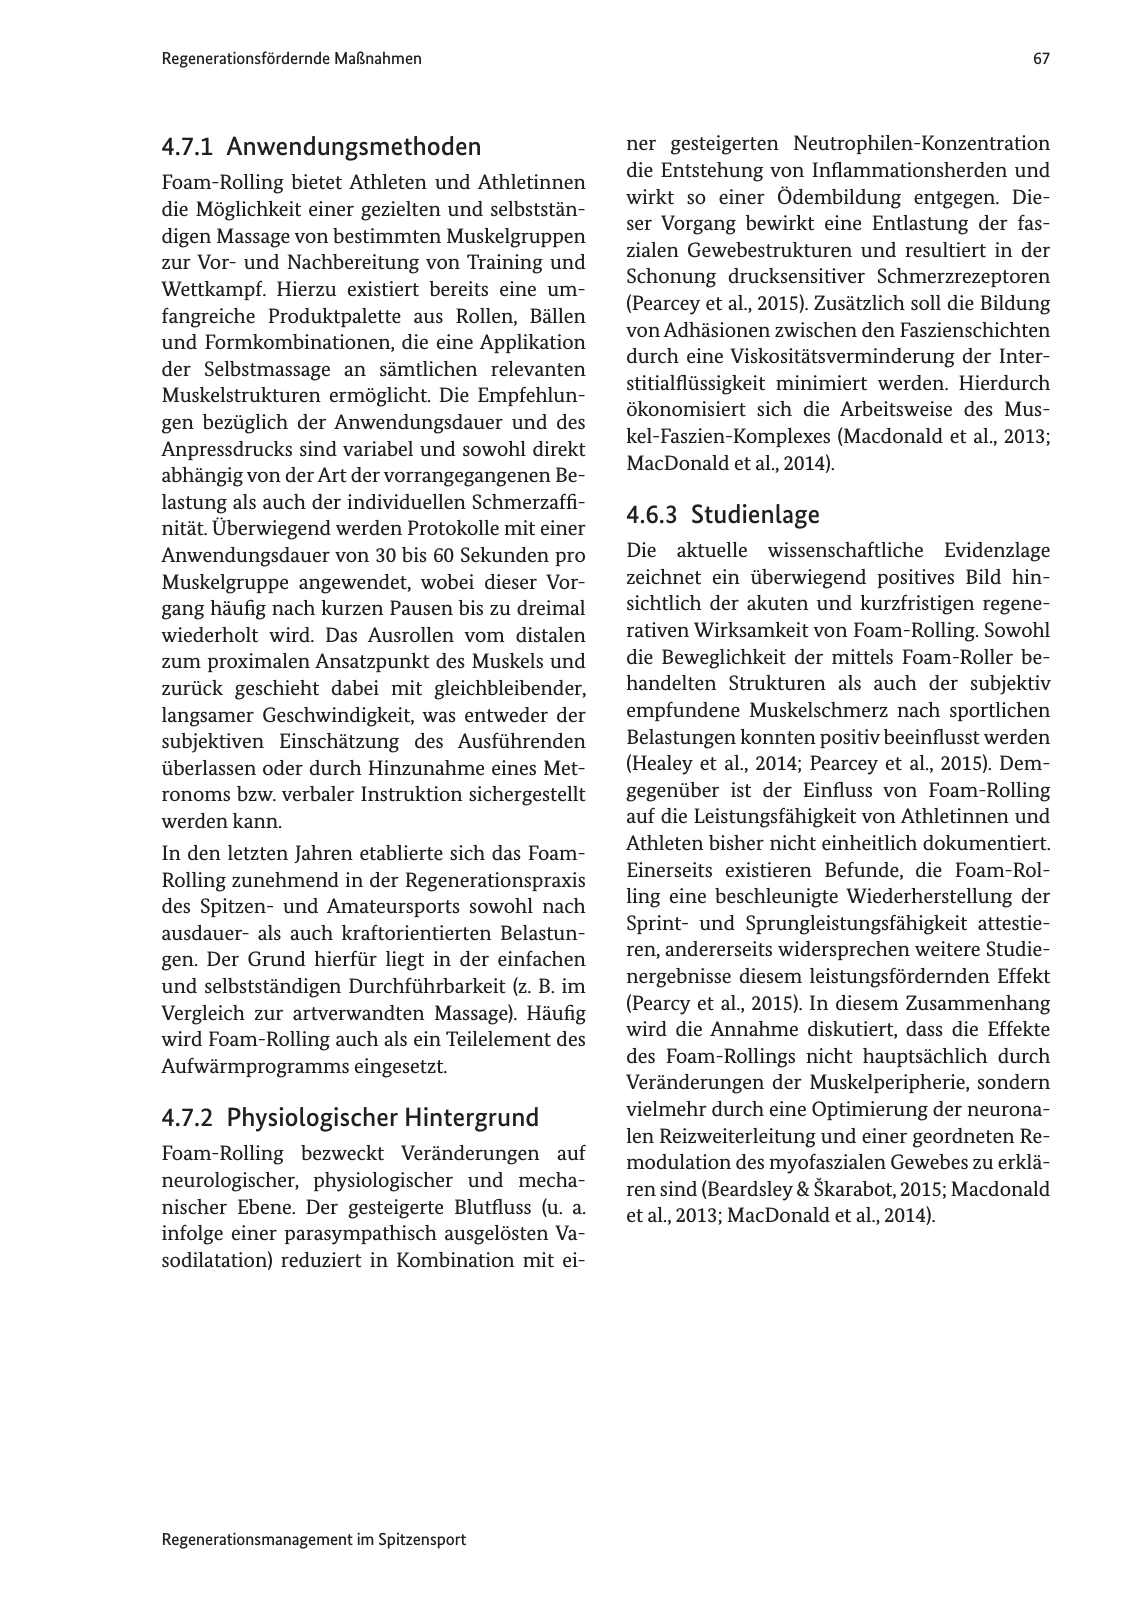 Vorschau Handreichung Regmann / Regenerationsmanagement im Spitzensport Seite 68